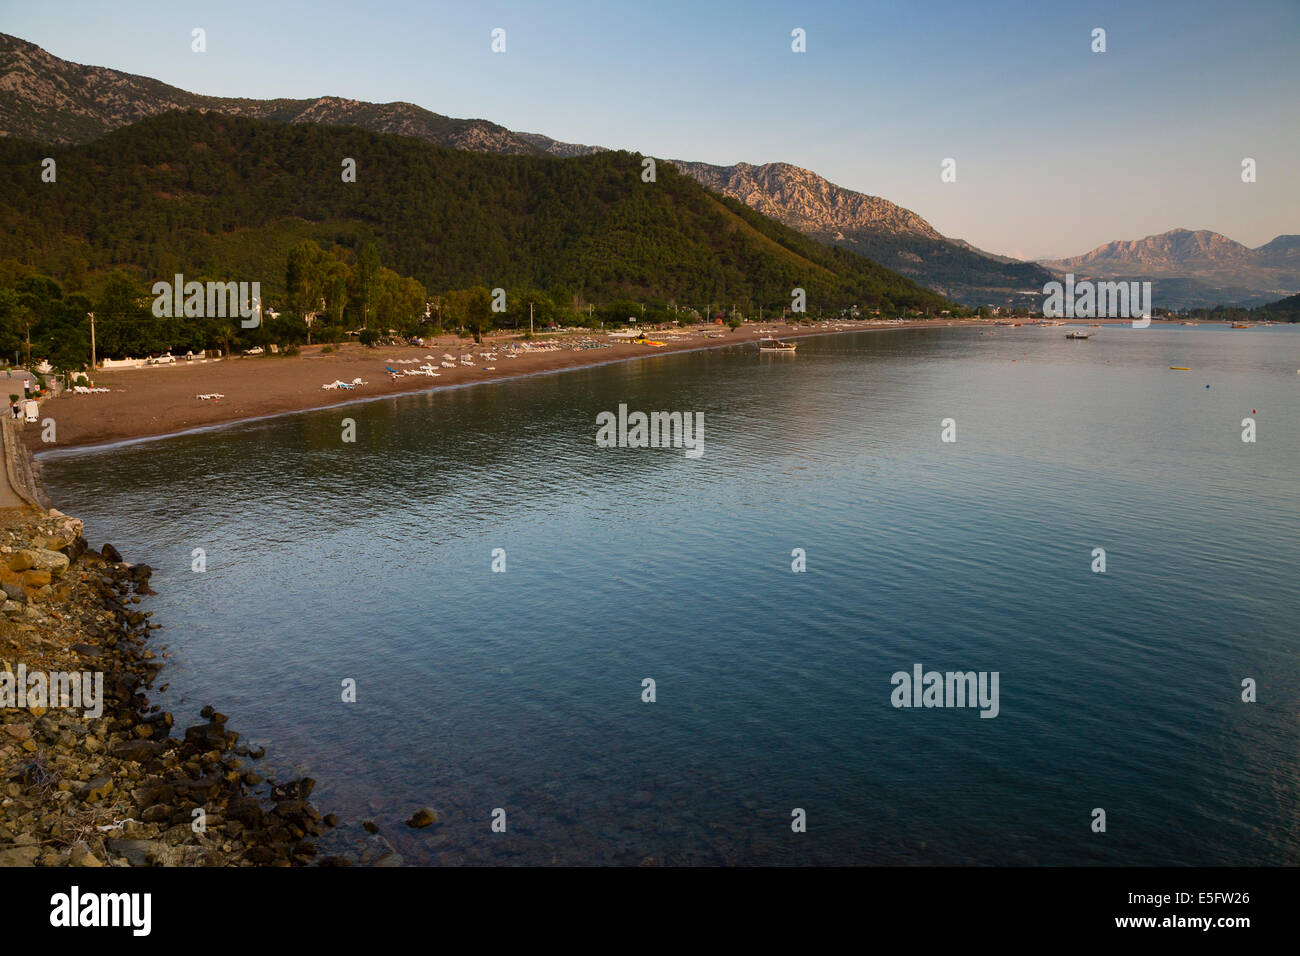 ADRASAN, TURKEY View from Adrasan beach. Stock Photo